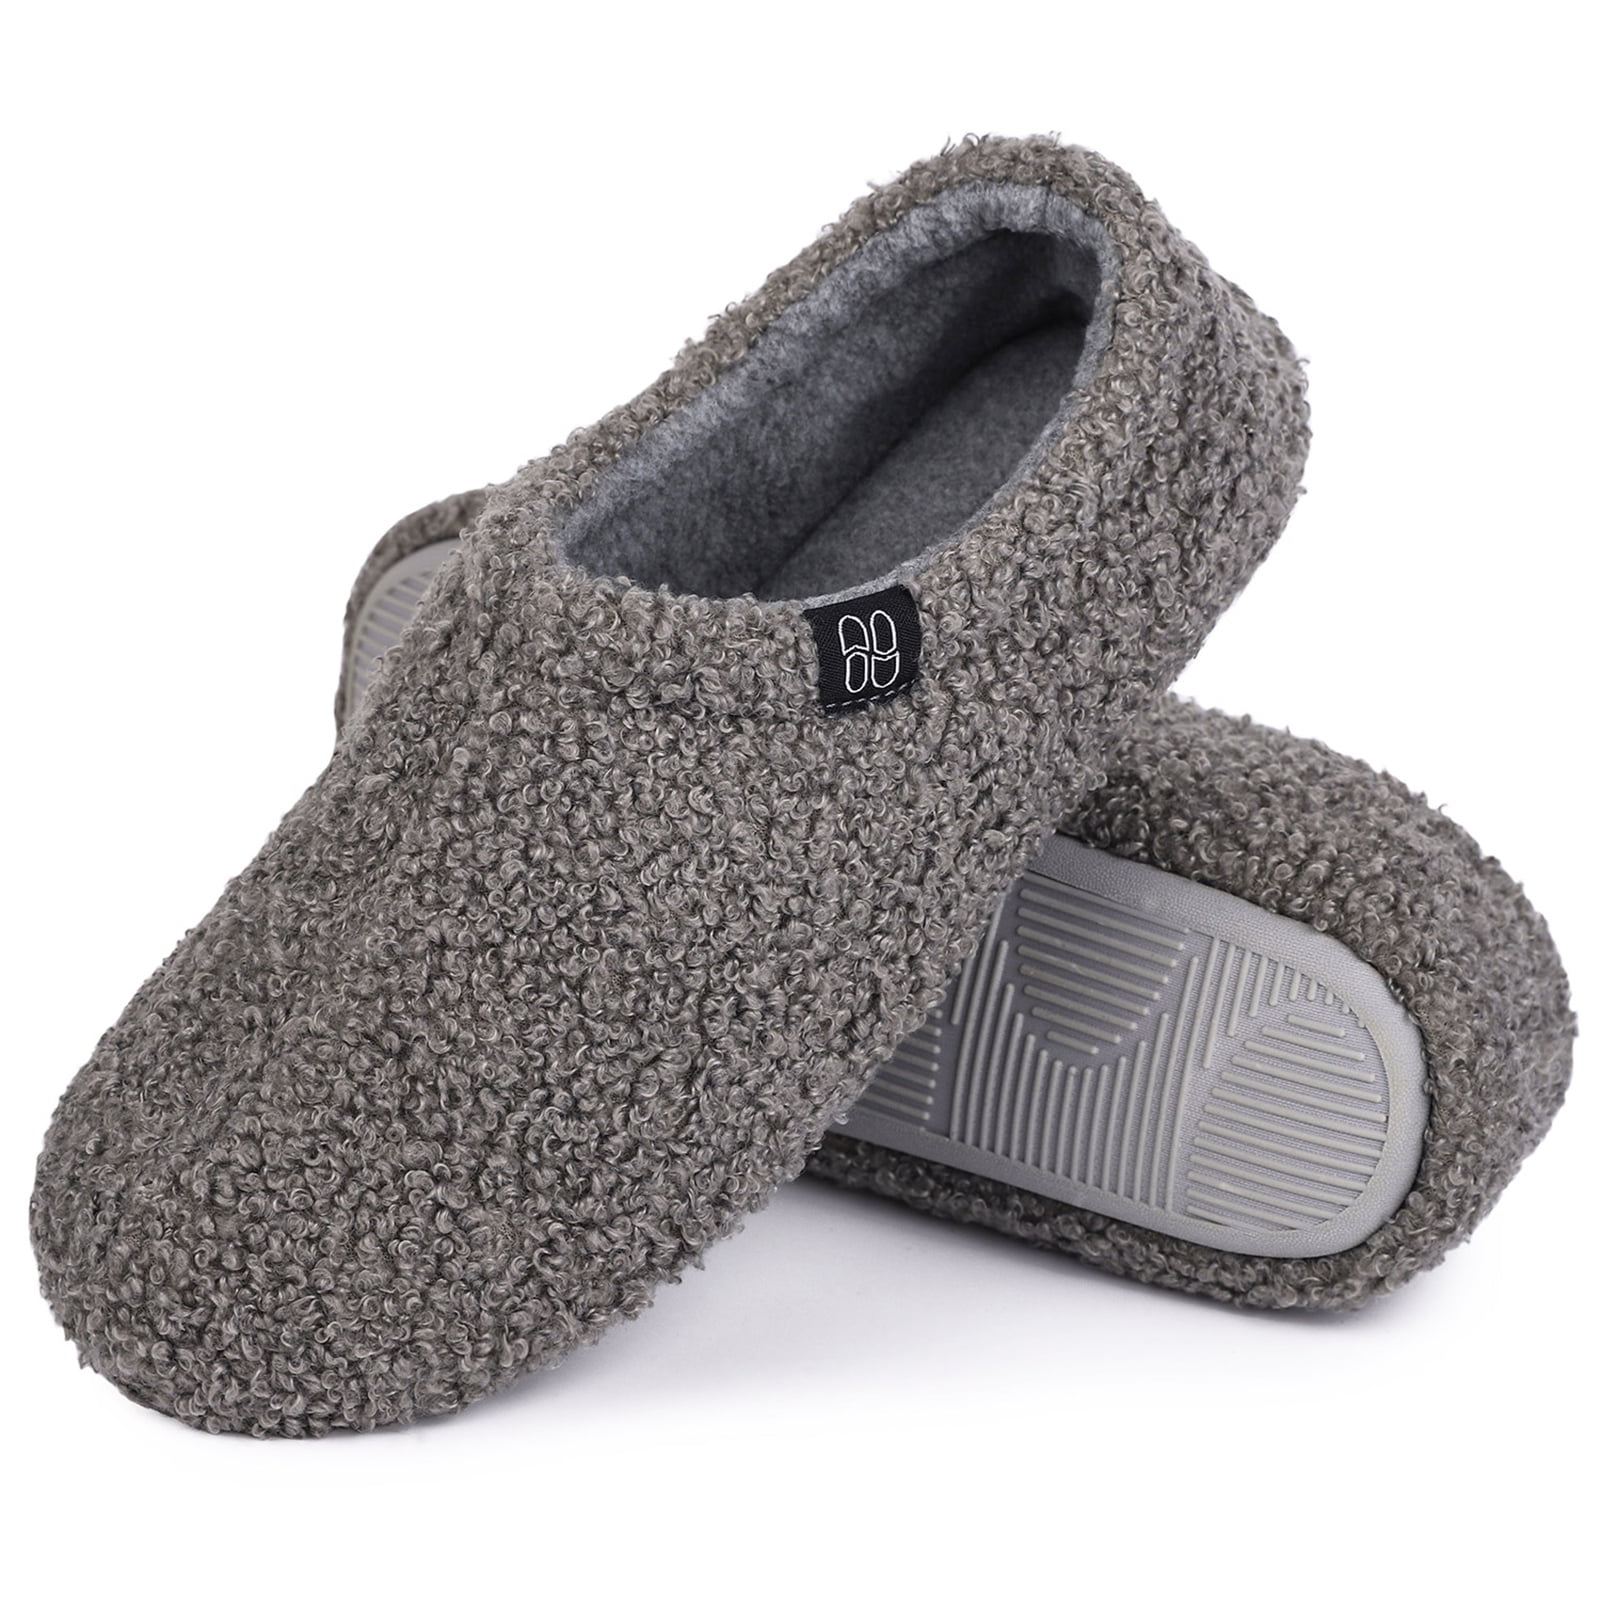 hometop women's cozy memory foam loafer slippers indoor outdoor